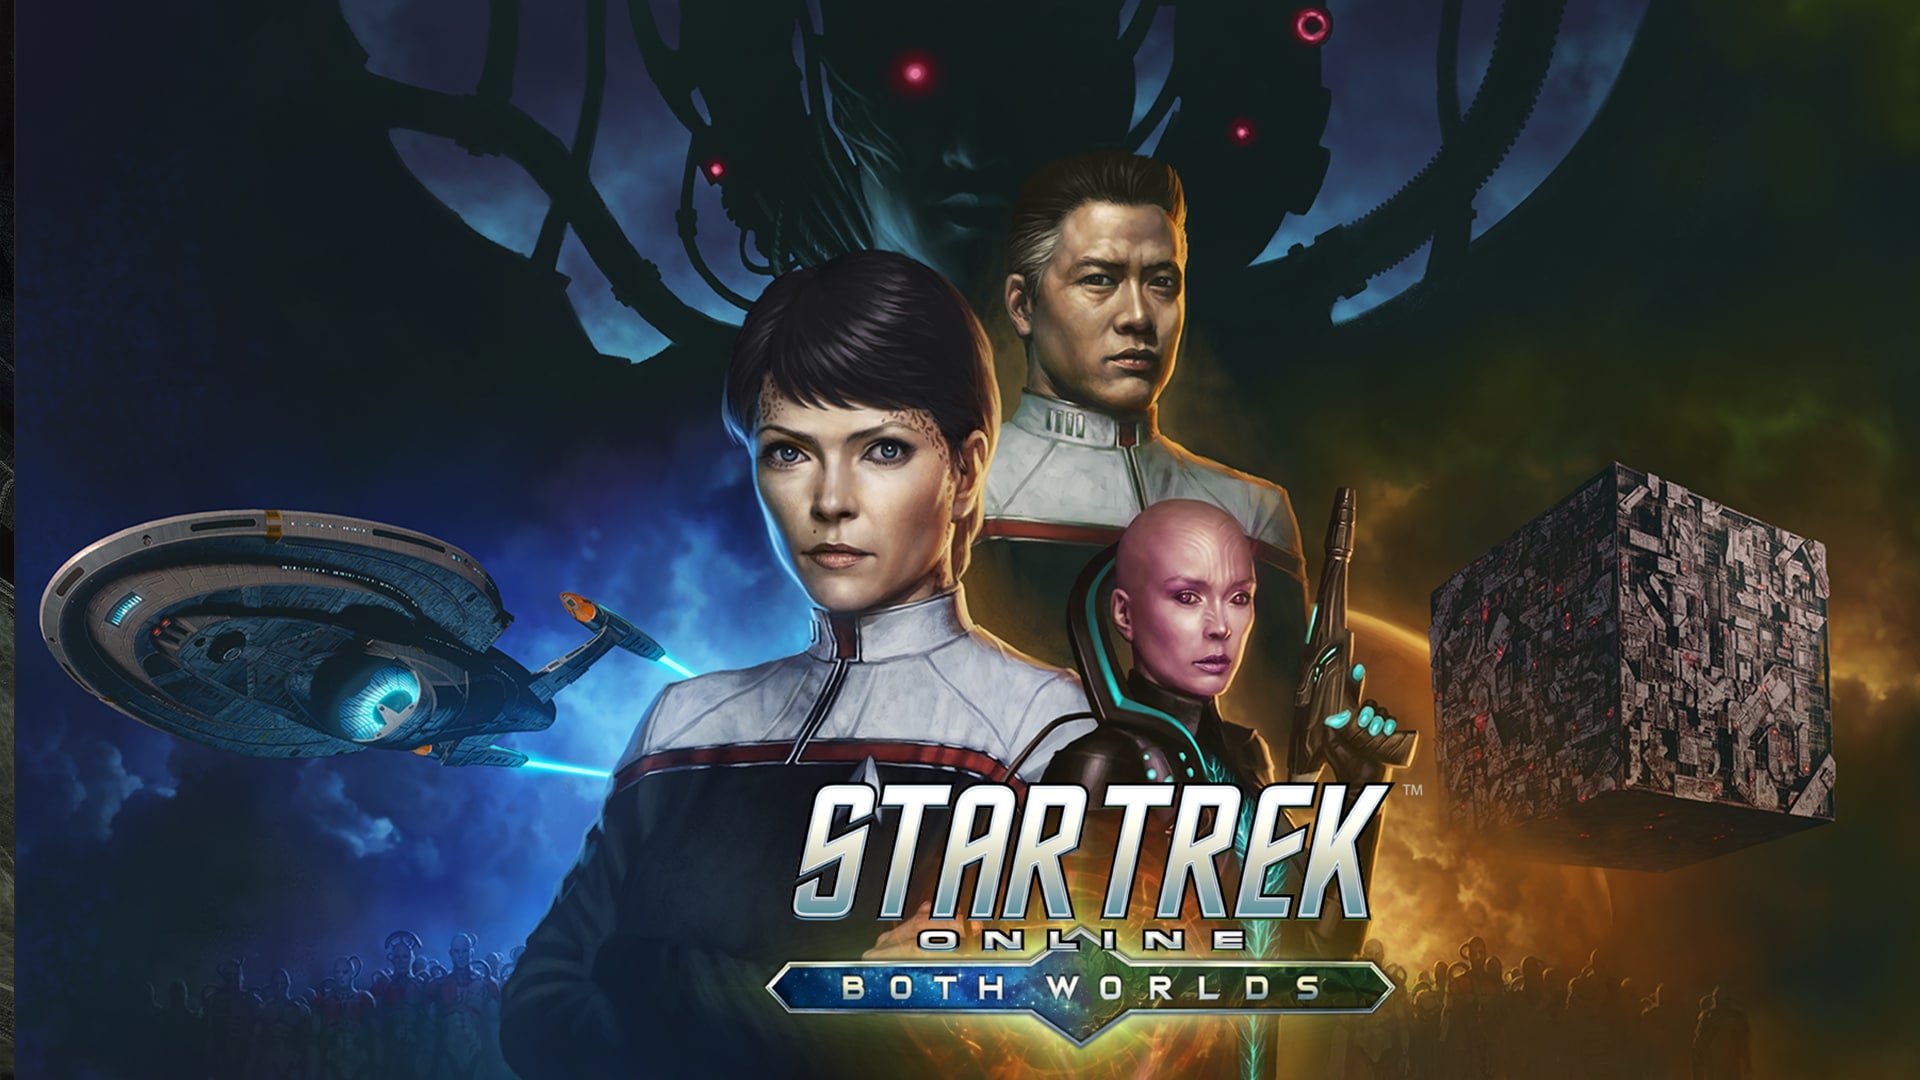 [PC] Star Trek Online : Both Worlds, disponible le 23 janvier ! Cf587381dcba7277e827998abc18b4a61704835437